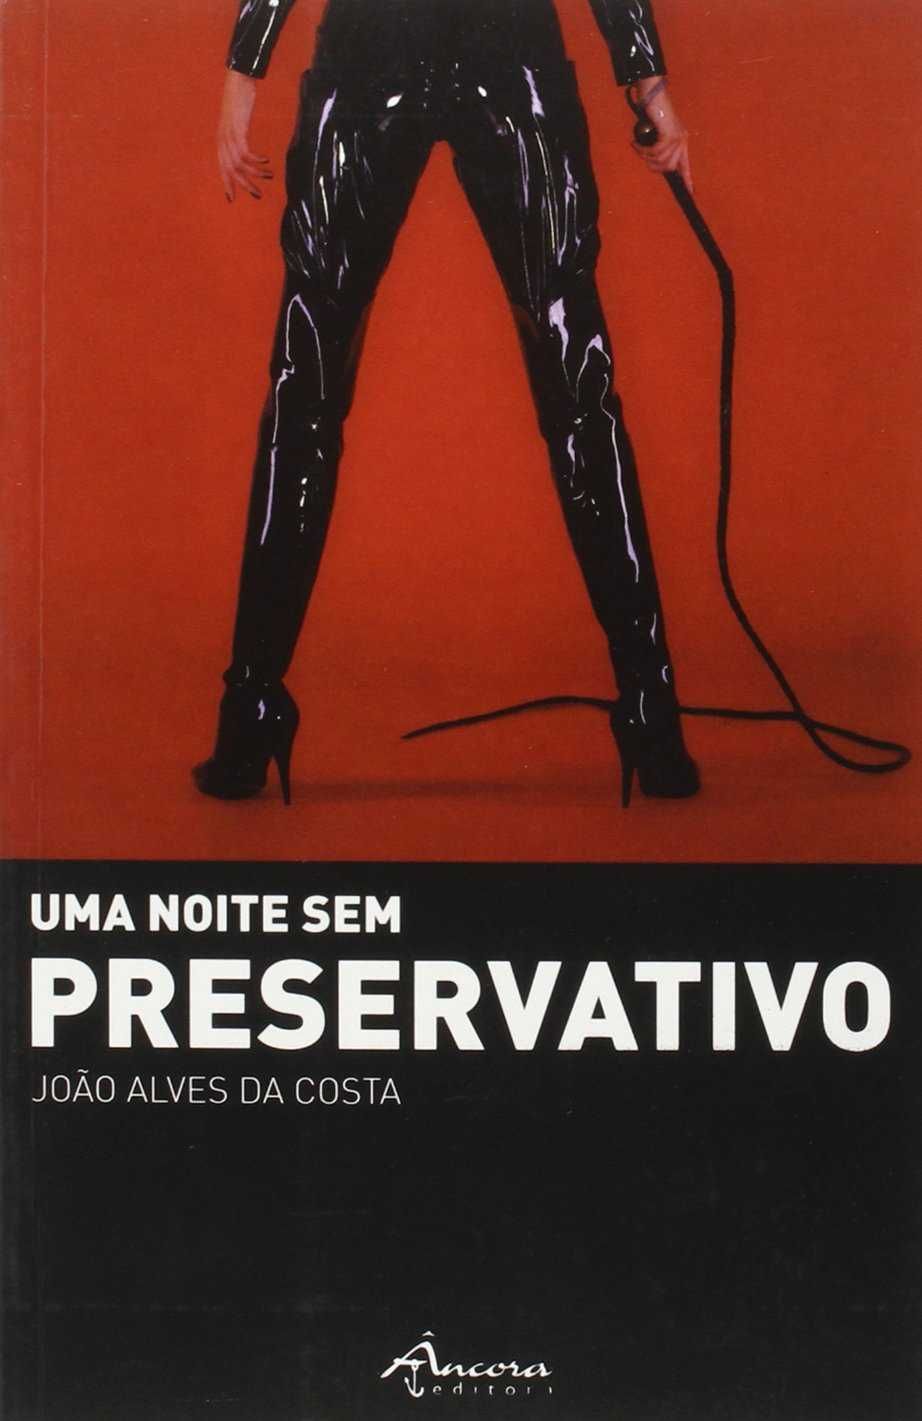 Livro “Uma Noite sem Preservativo” de João Alves da Costa